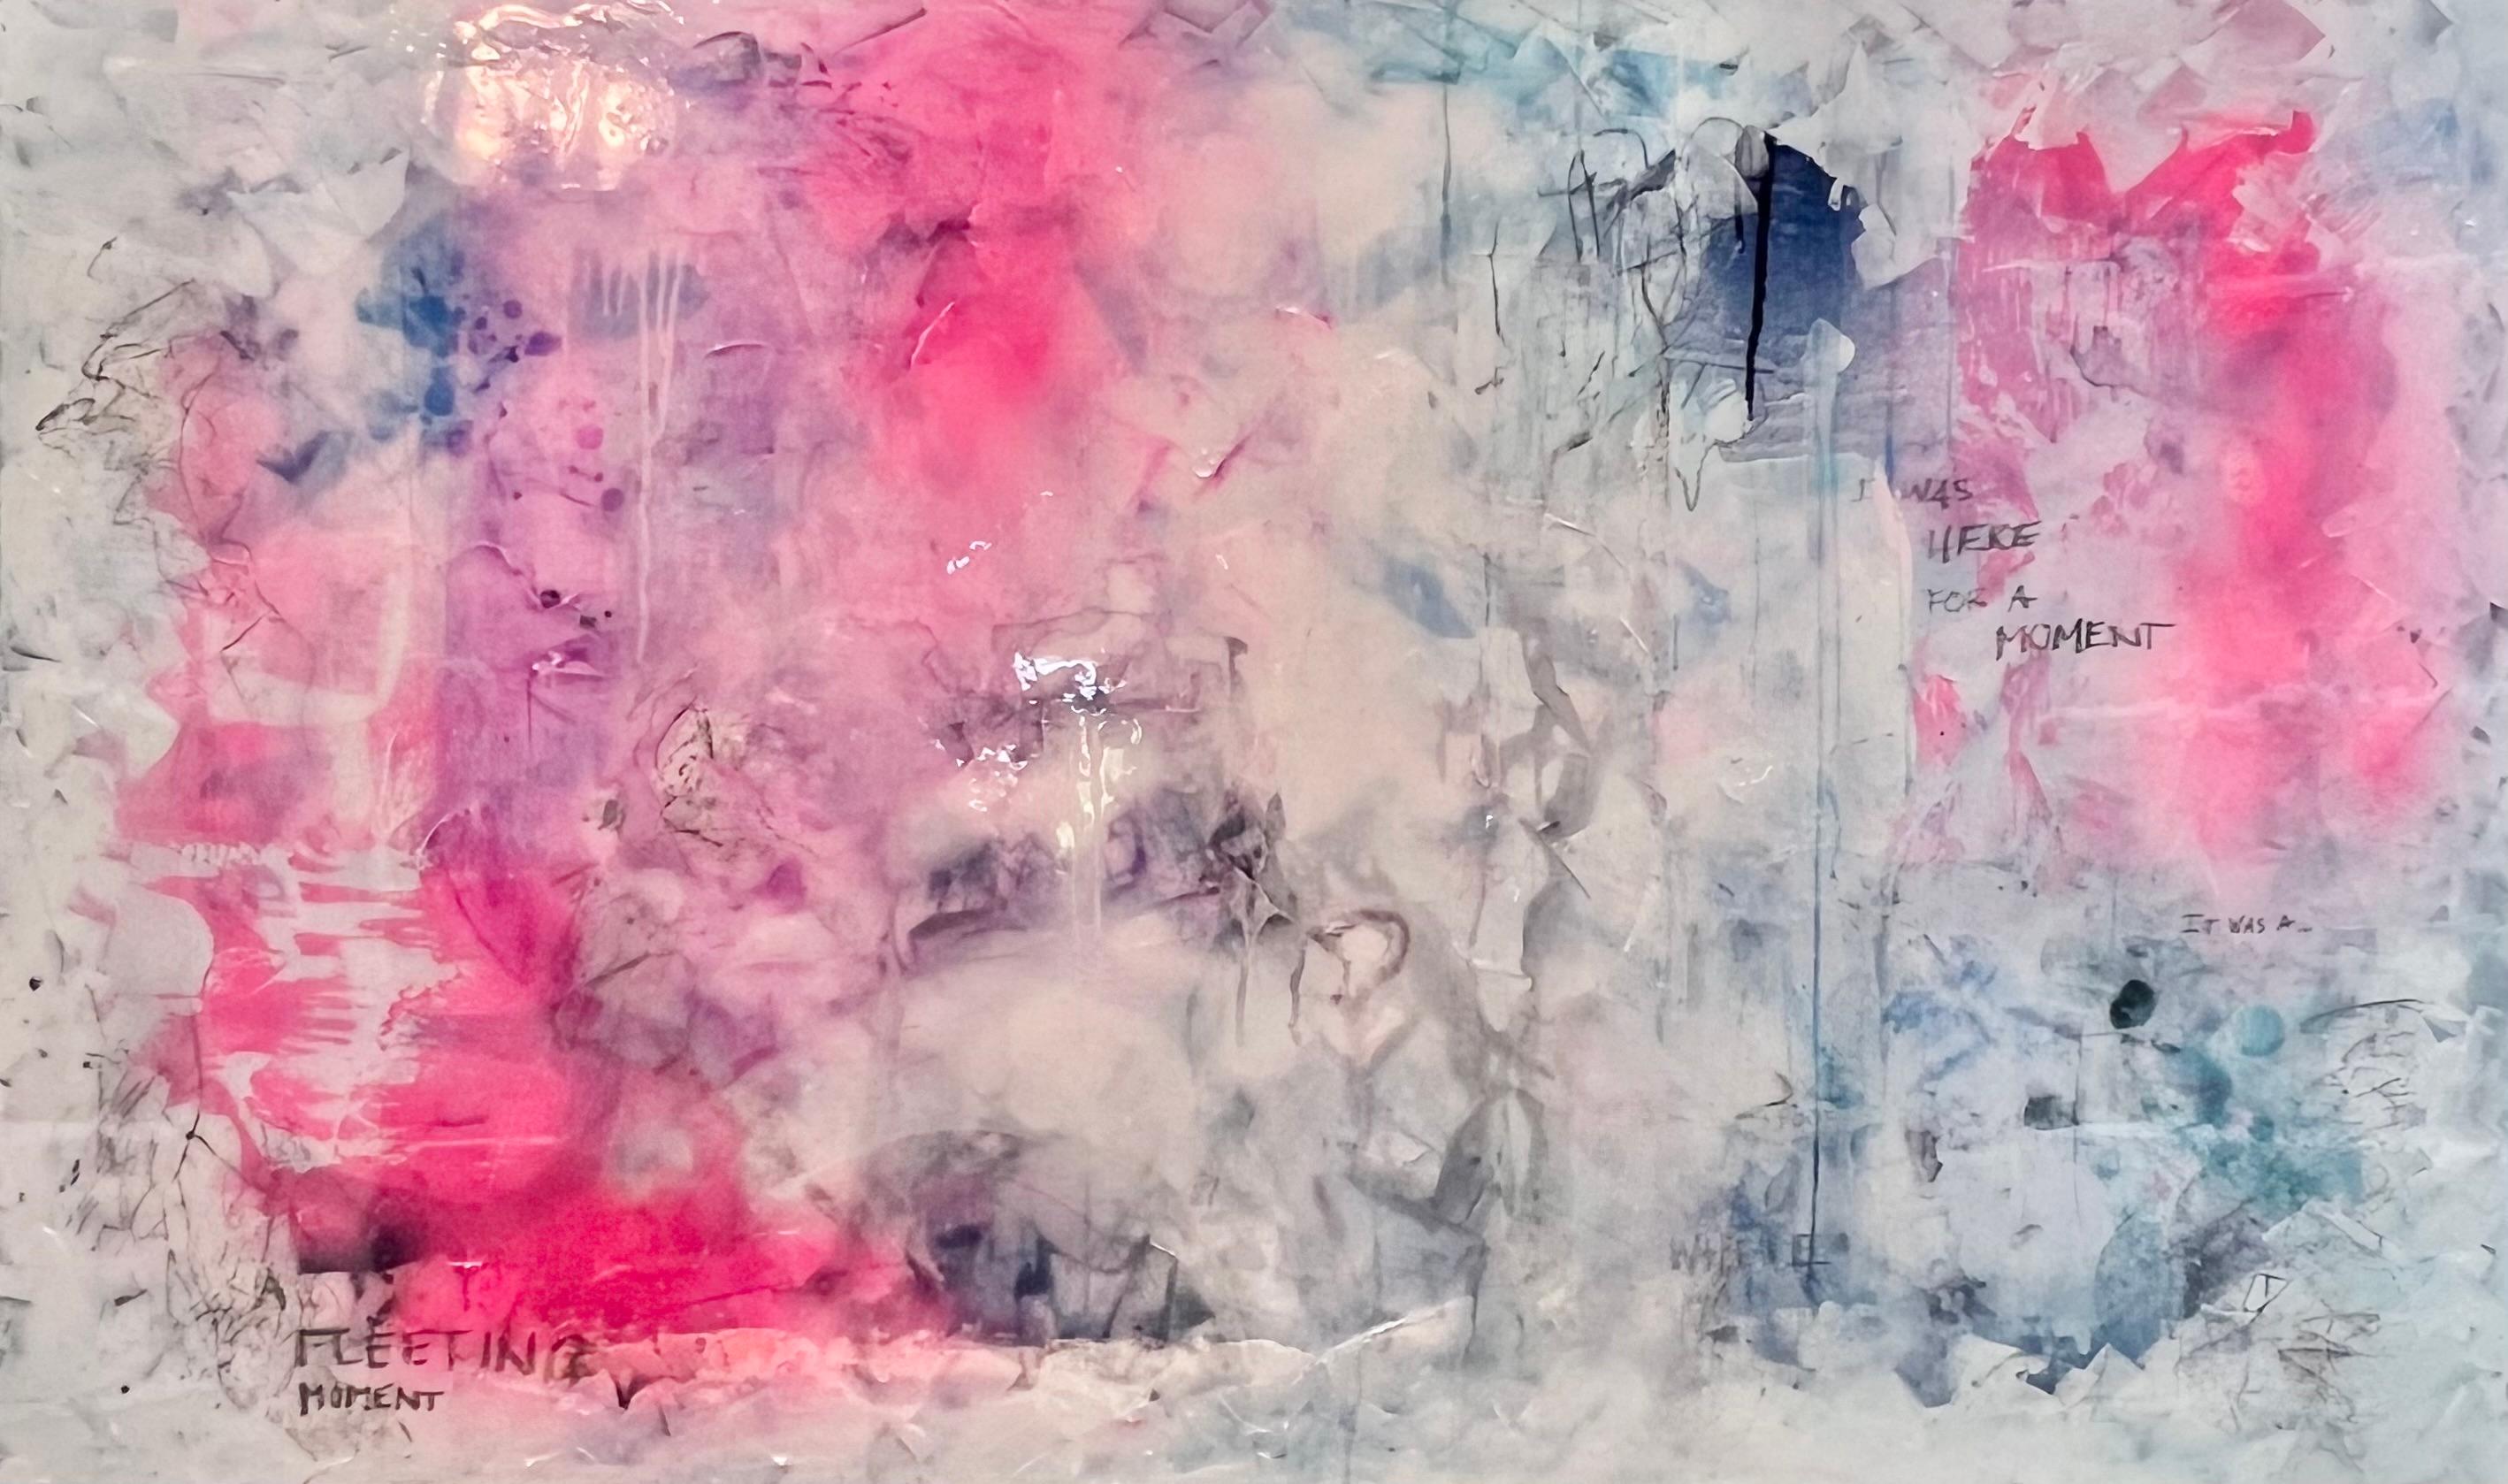 Abstract Painting Annie Mandelkern - Moment fugace, peinture abstraite, techniques mixtes et résine sur toile 